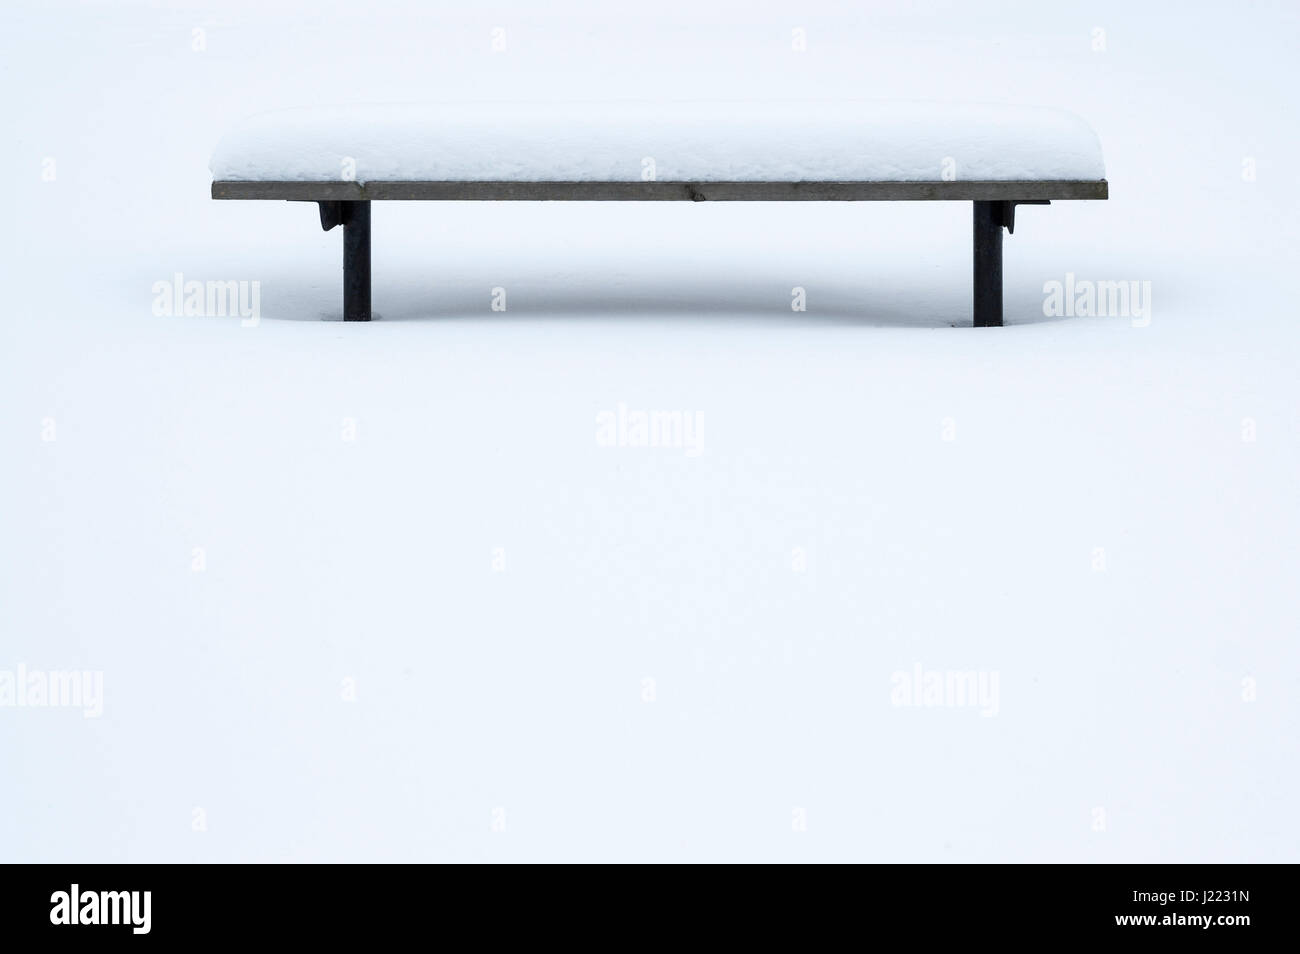 Wood park panchina coperta di neve in inverno, solitudine e tranquillità, meditazione, sereno, nessuno, relax, tranquillità, concetto. Foto Stock